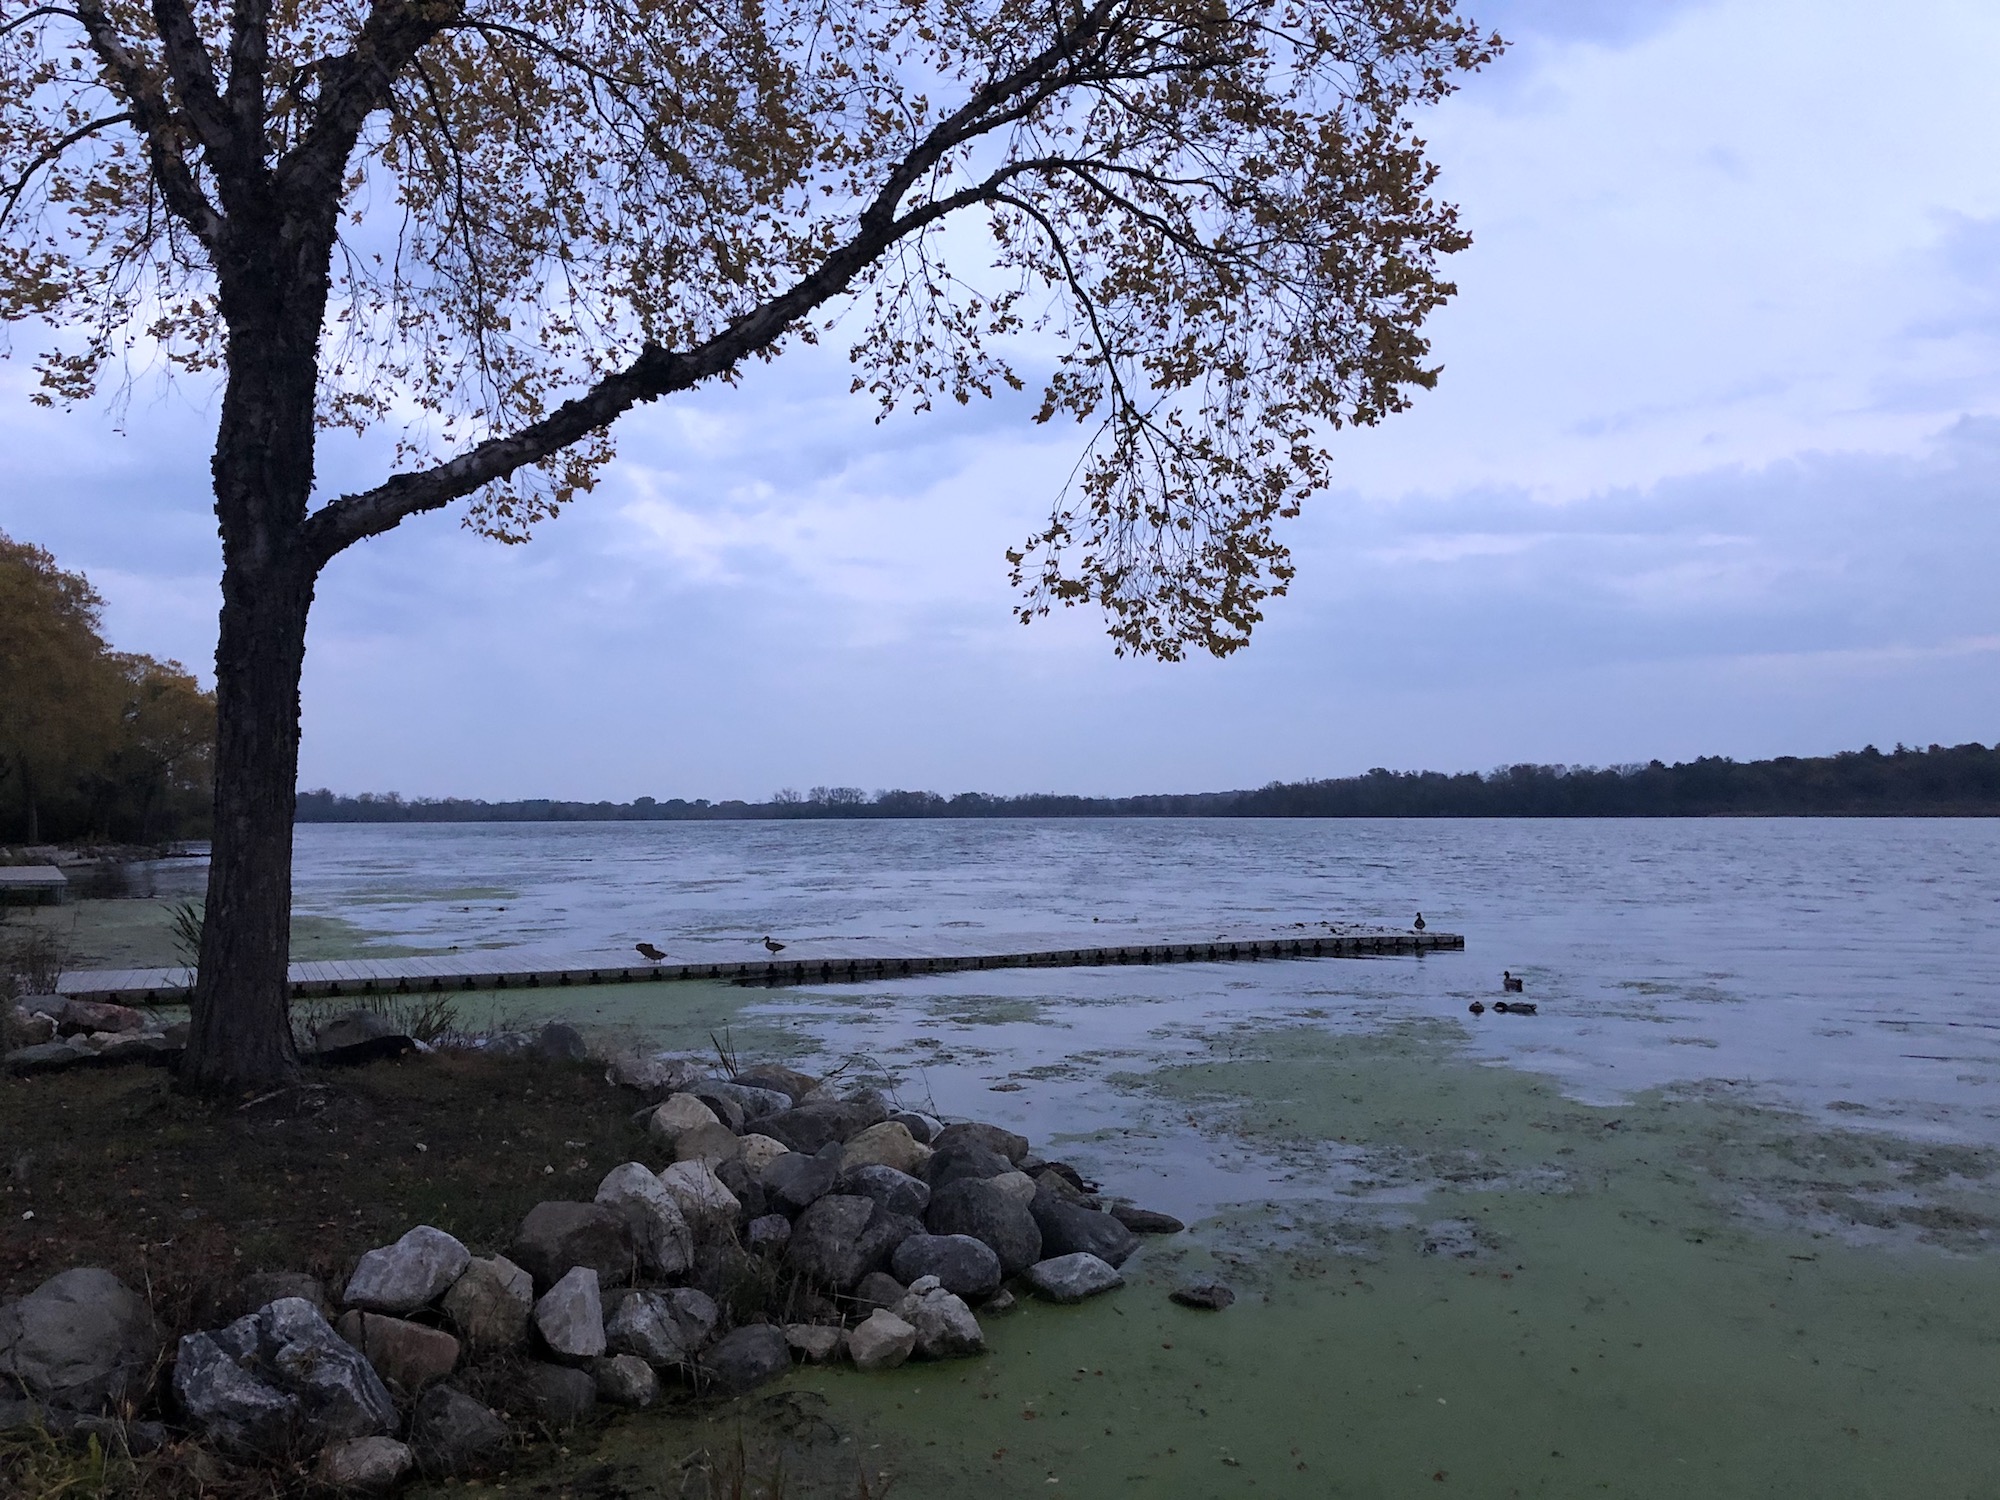 Lake Wingra on October 21, 2019.